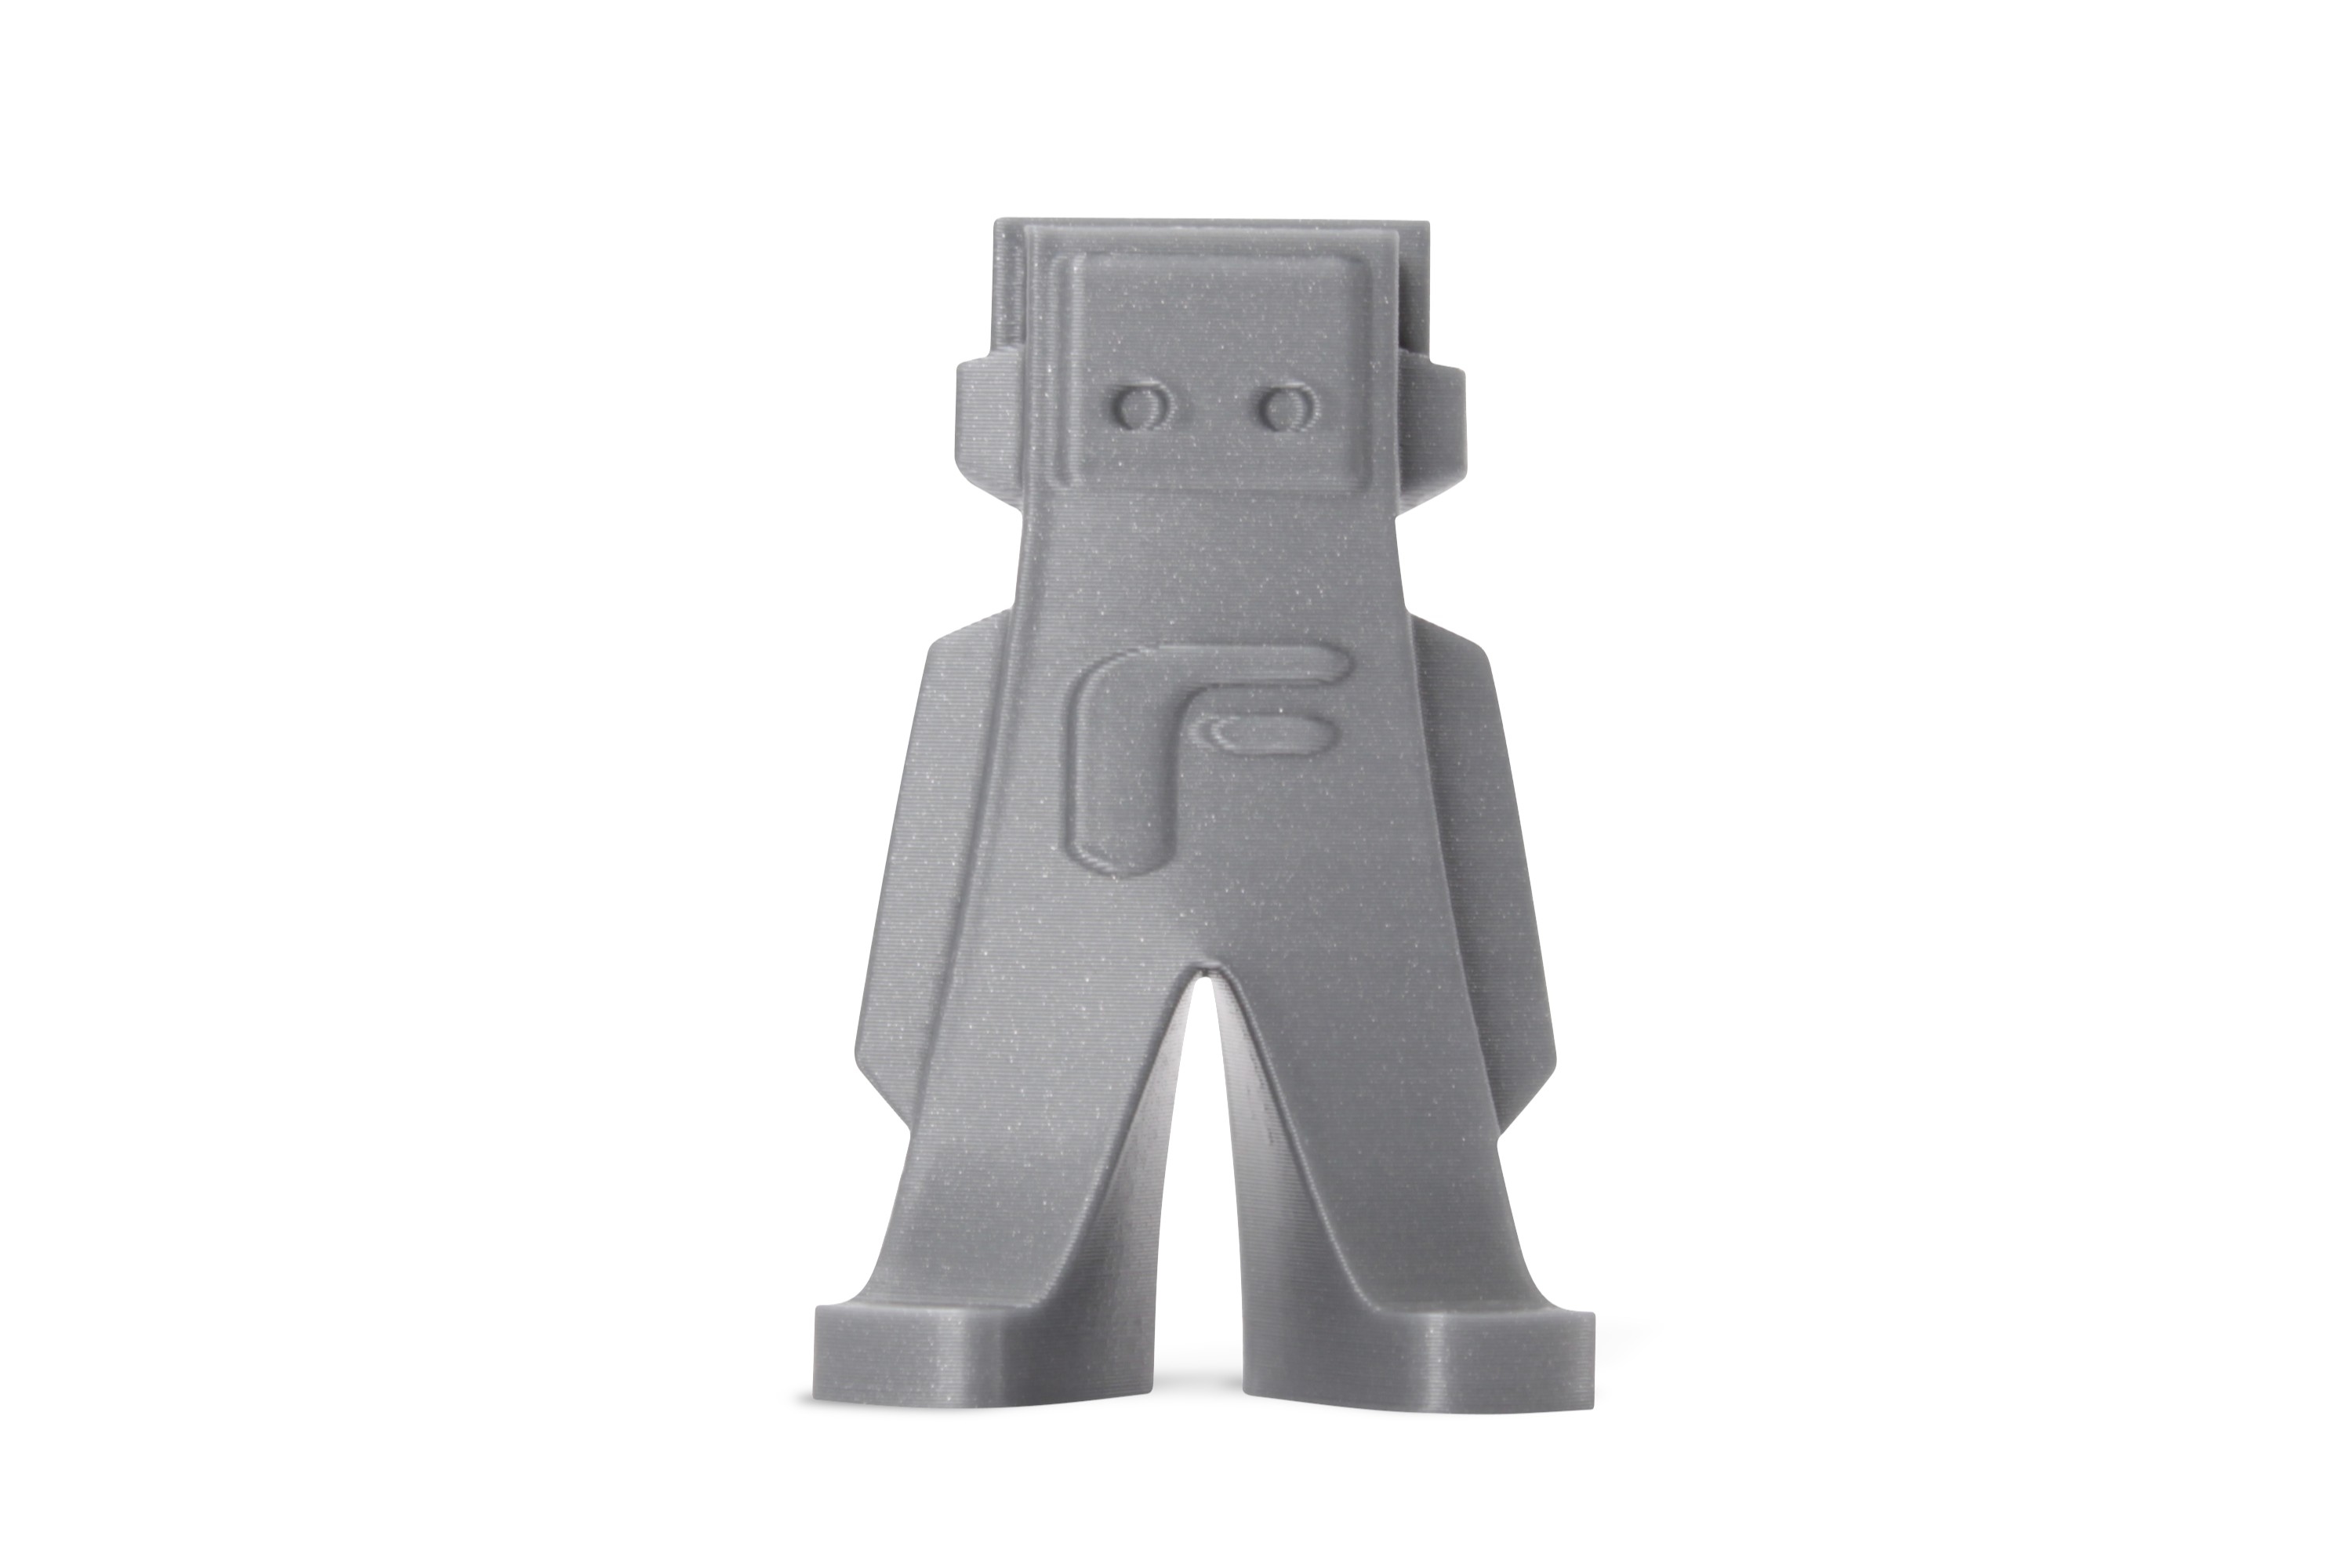 3D Print FilamentForm Futura PLA zilvergrijs-metallic look